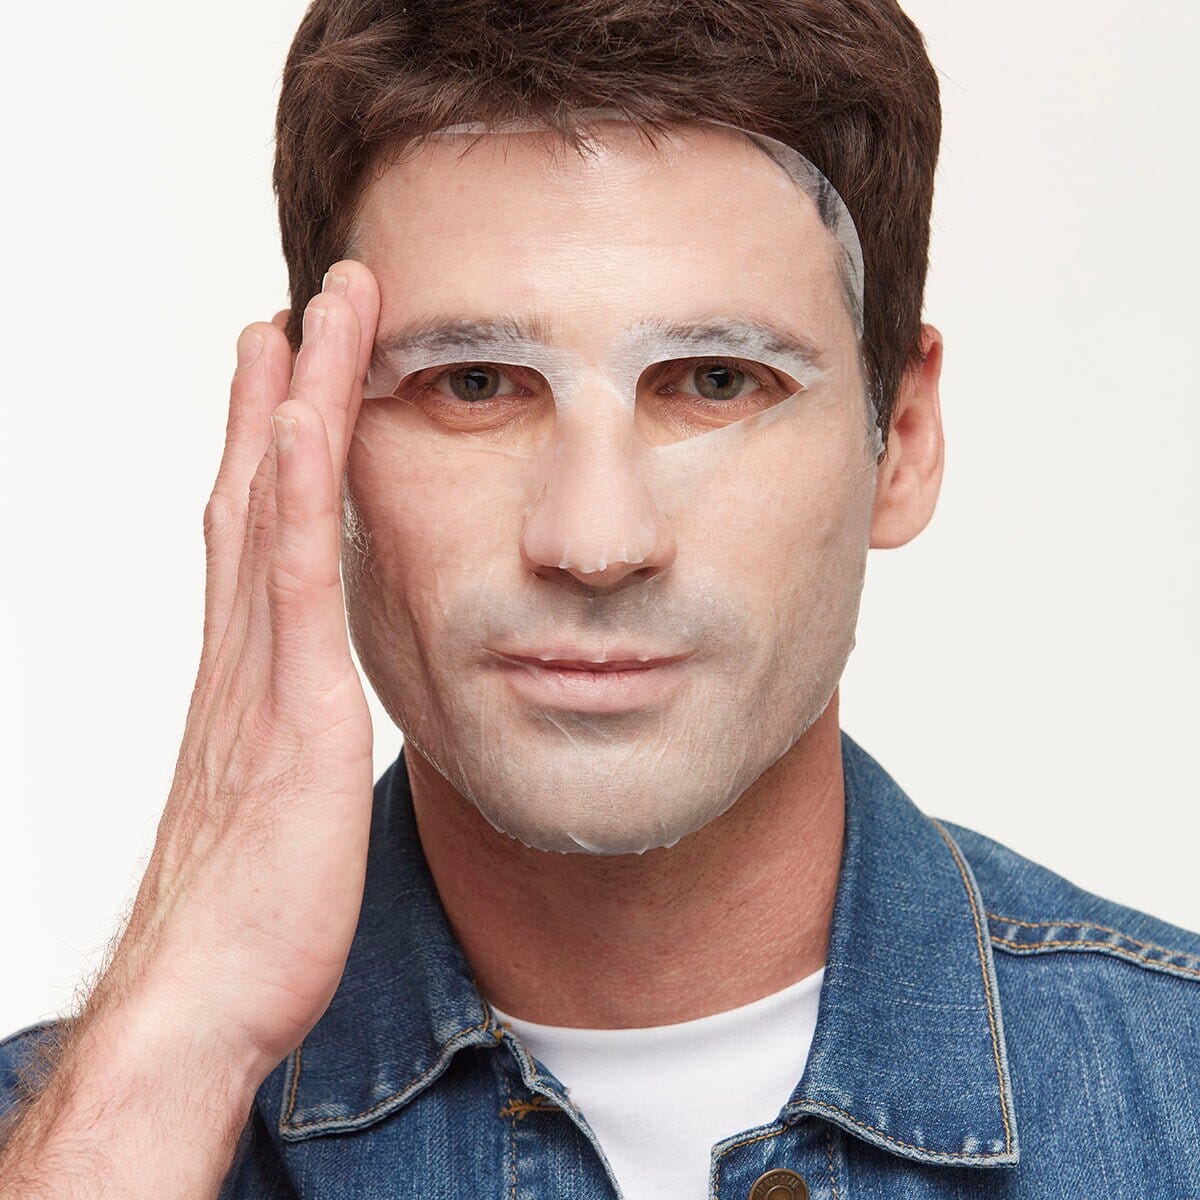 Ultra Soothing InvisaMask Sheet Mask BioRepublic SkinCare | The Best Sheet Masks 